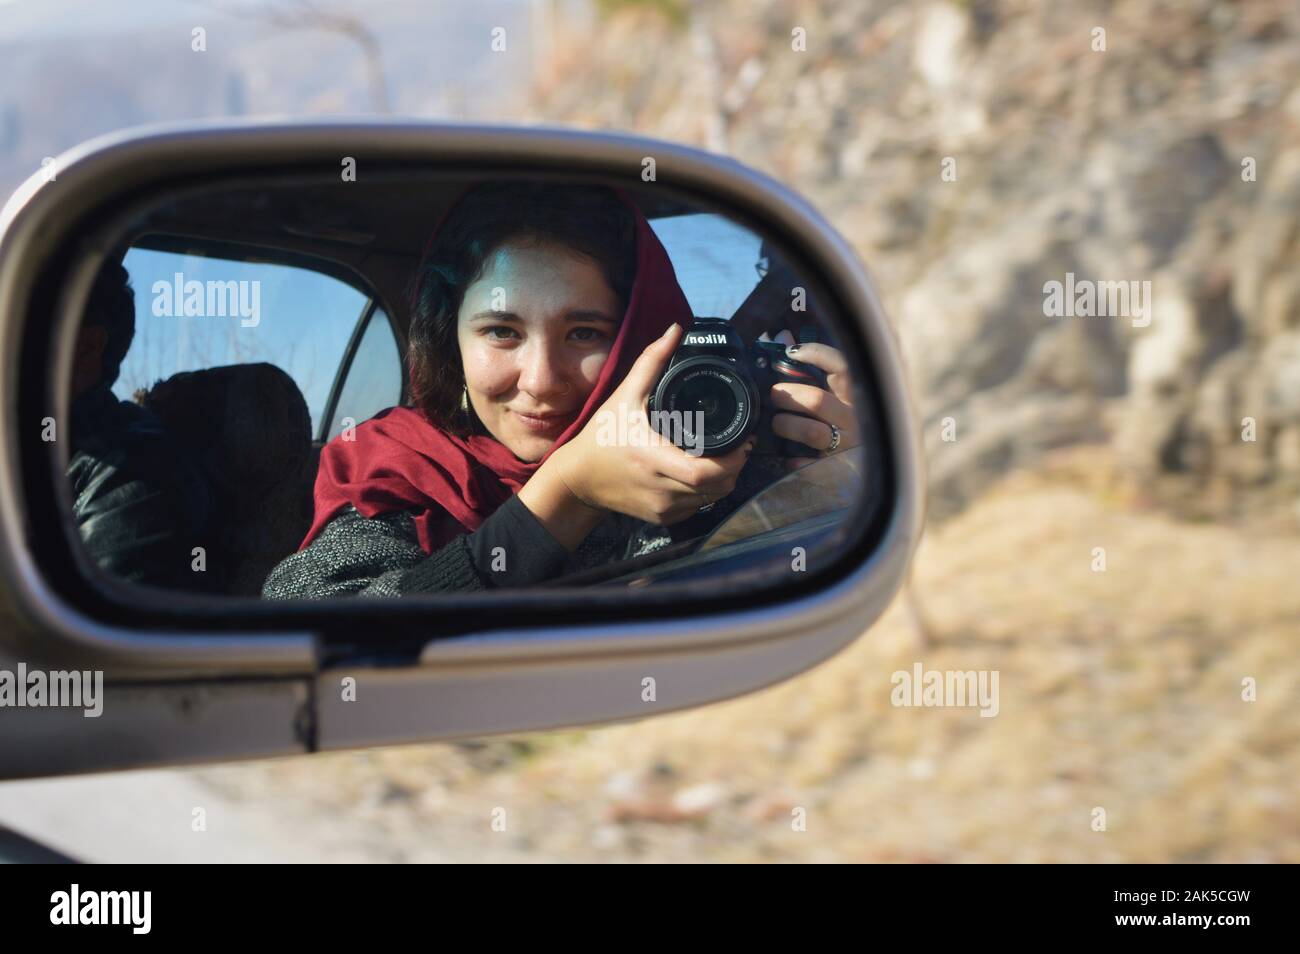 Auto portrait d'une femme portant un headscars dans un miroir de voiture, l'Afghanistan Banque D'Images